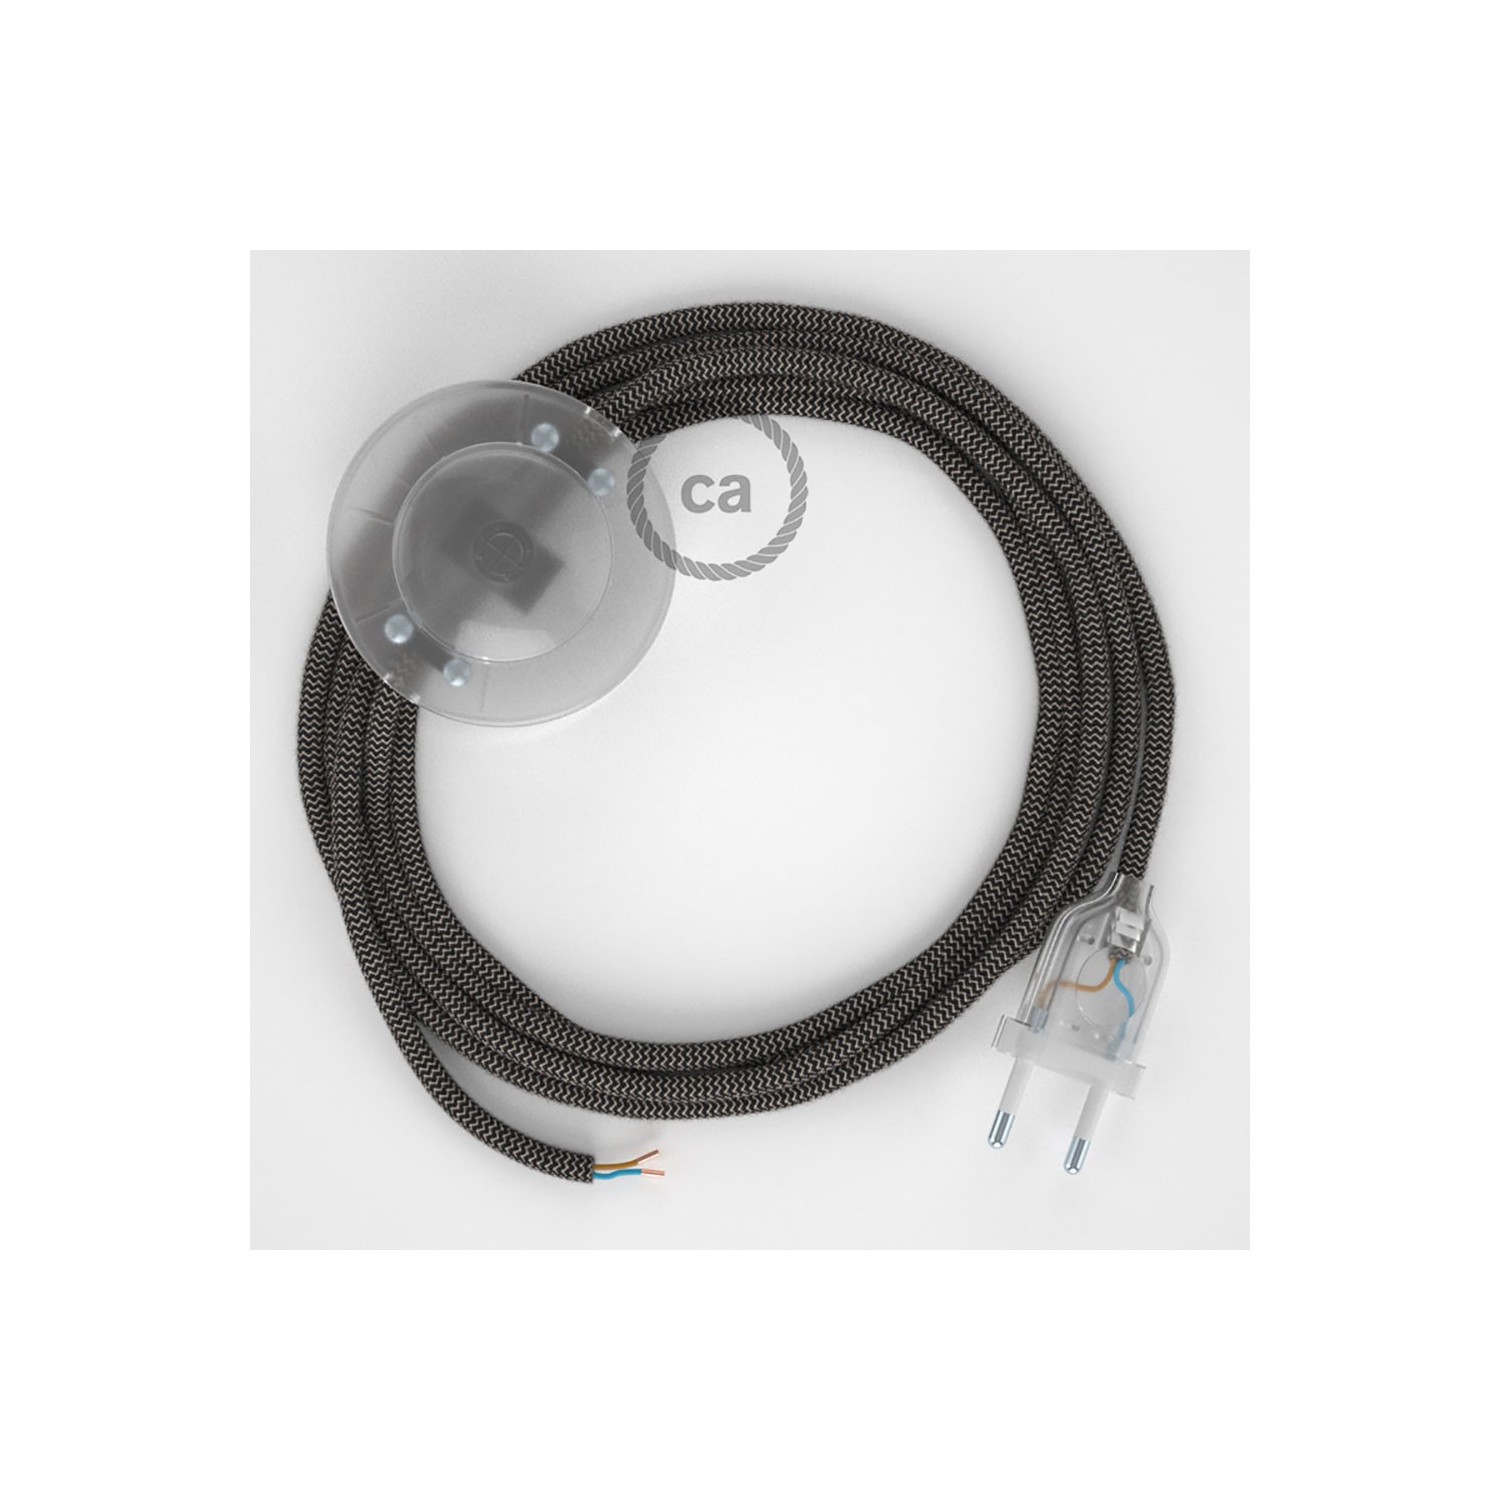 Cableado para lámpara de pie, cable RD74 ZigZag Antracita 3 m. Elige tu el color de la clavija y del interruptor!